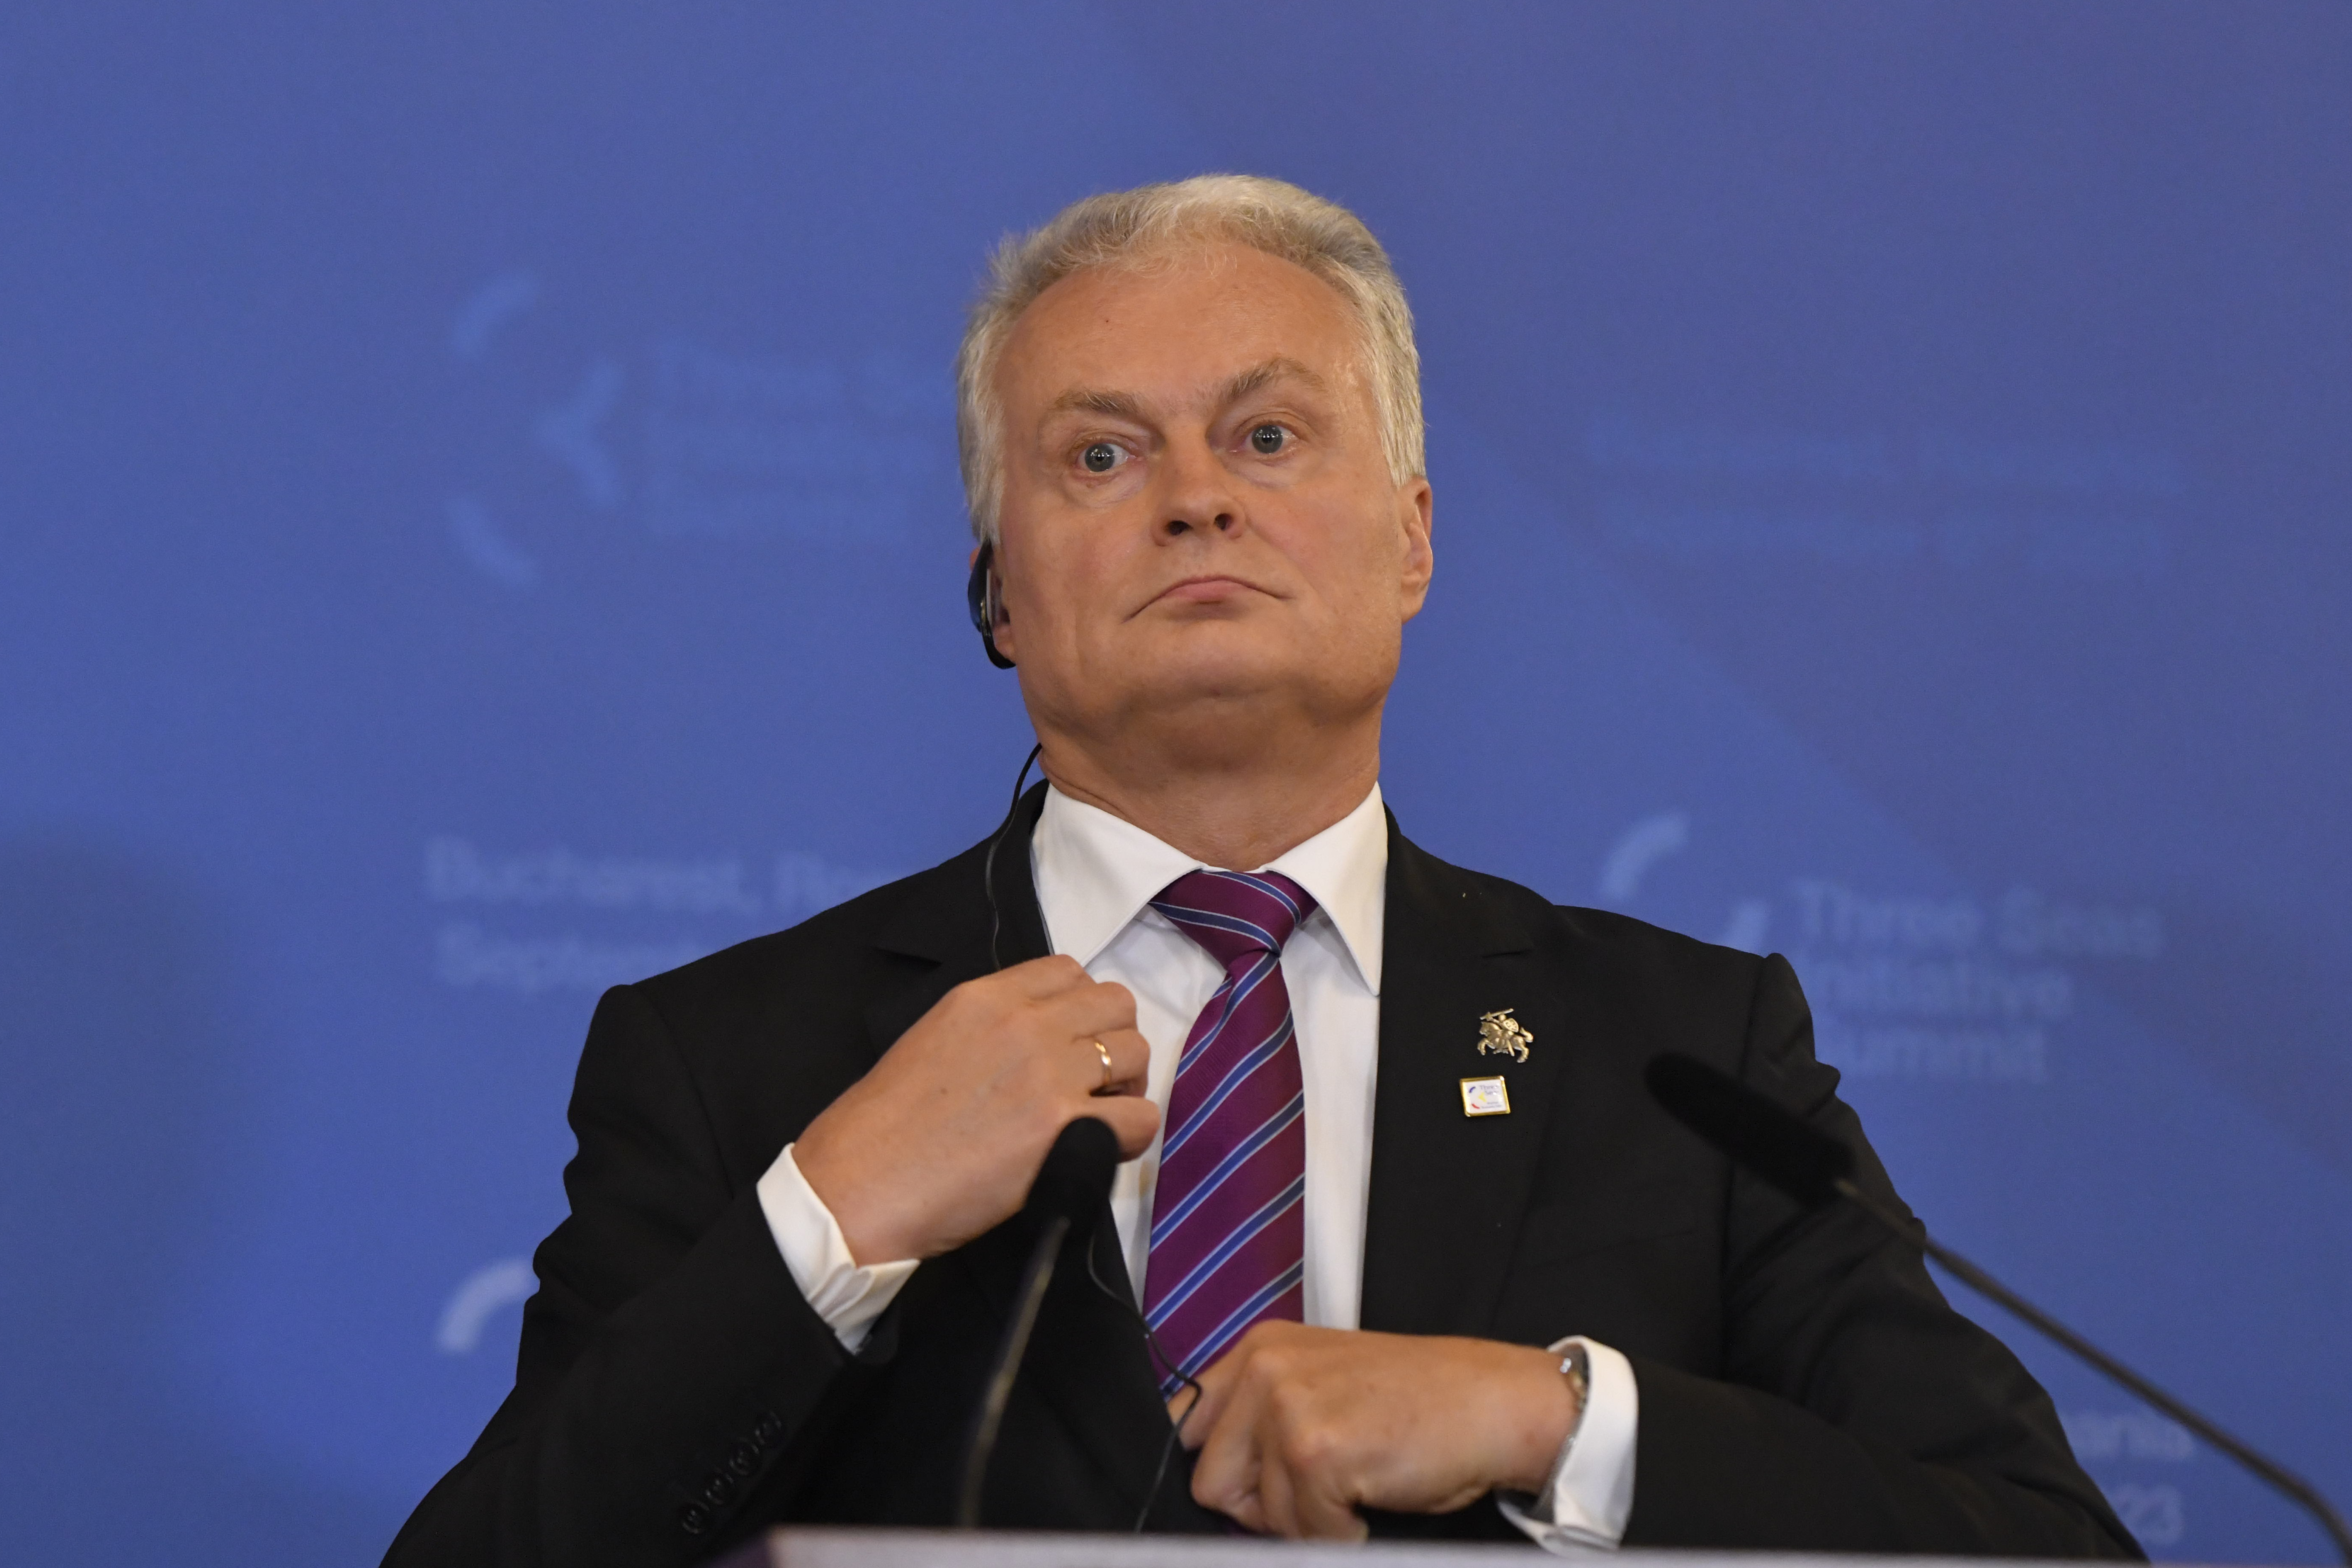 Alegeri prezidenţiale în Lituania pe fondul temerilor legate de intenţiile Rusiei